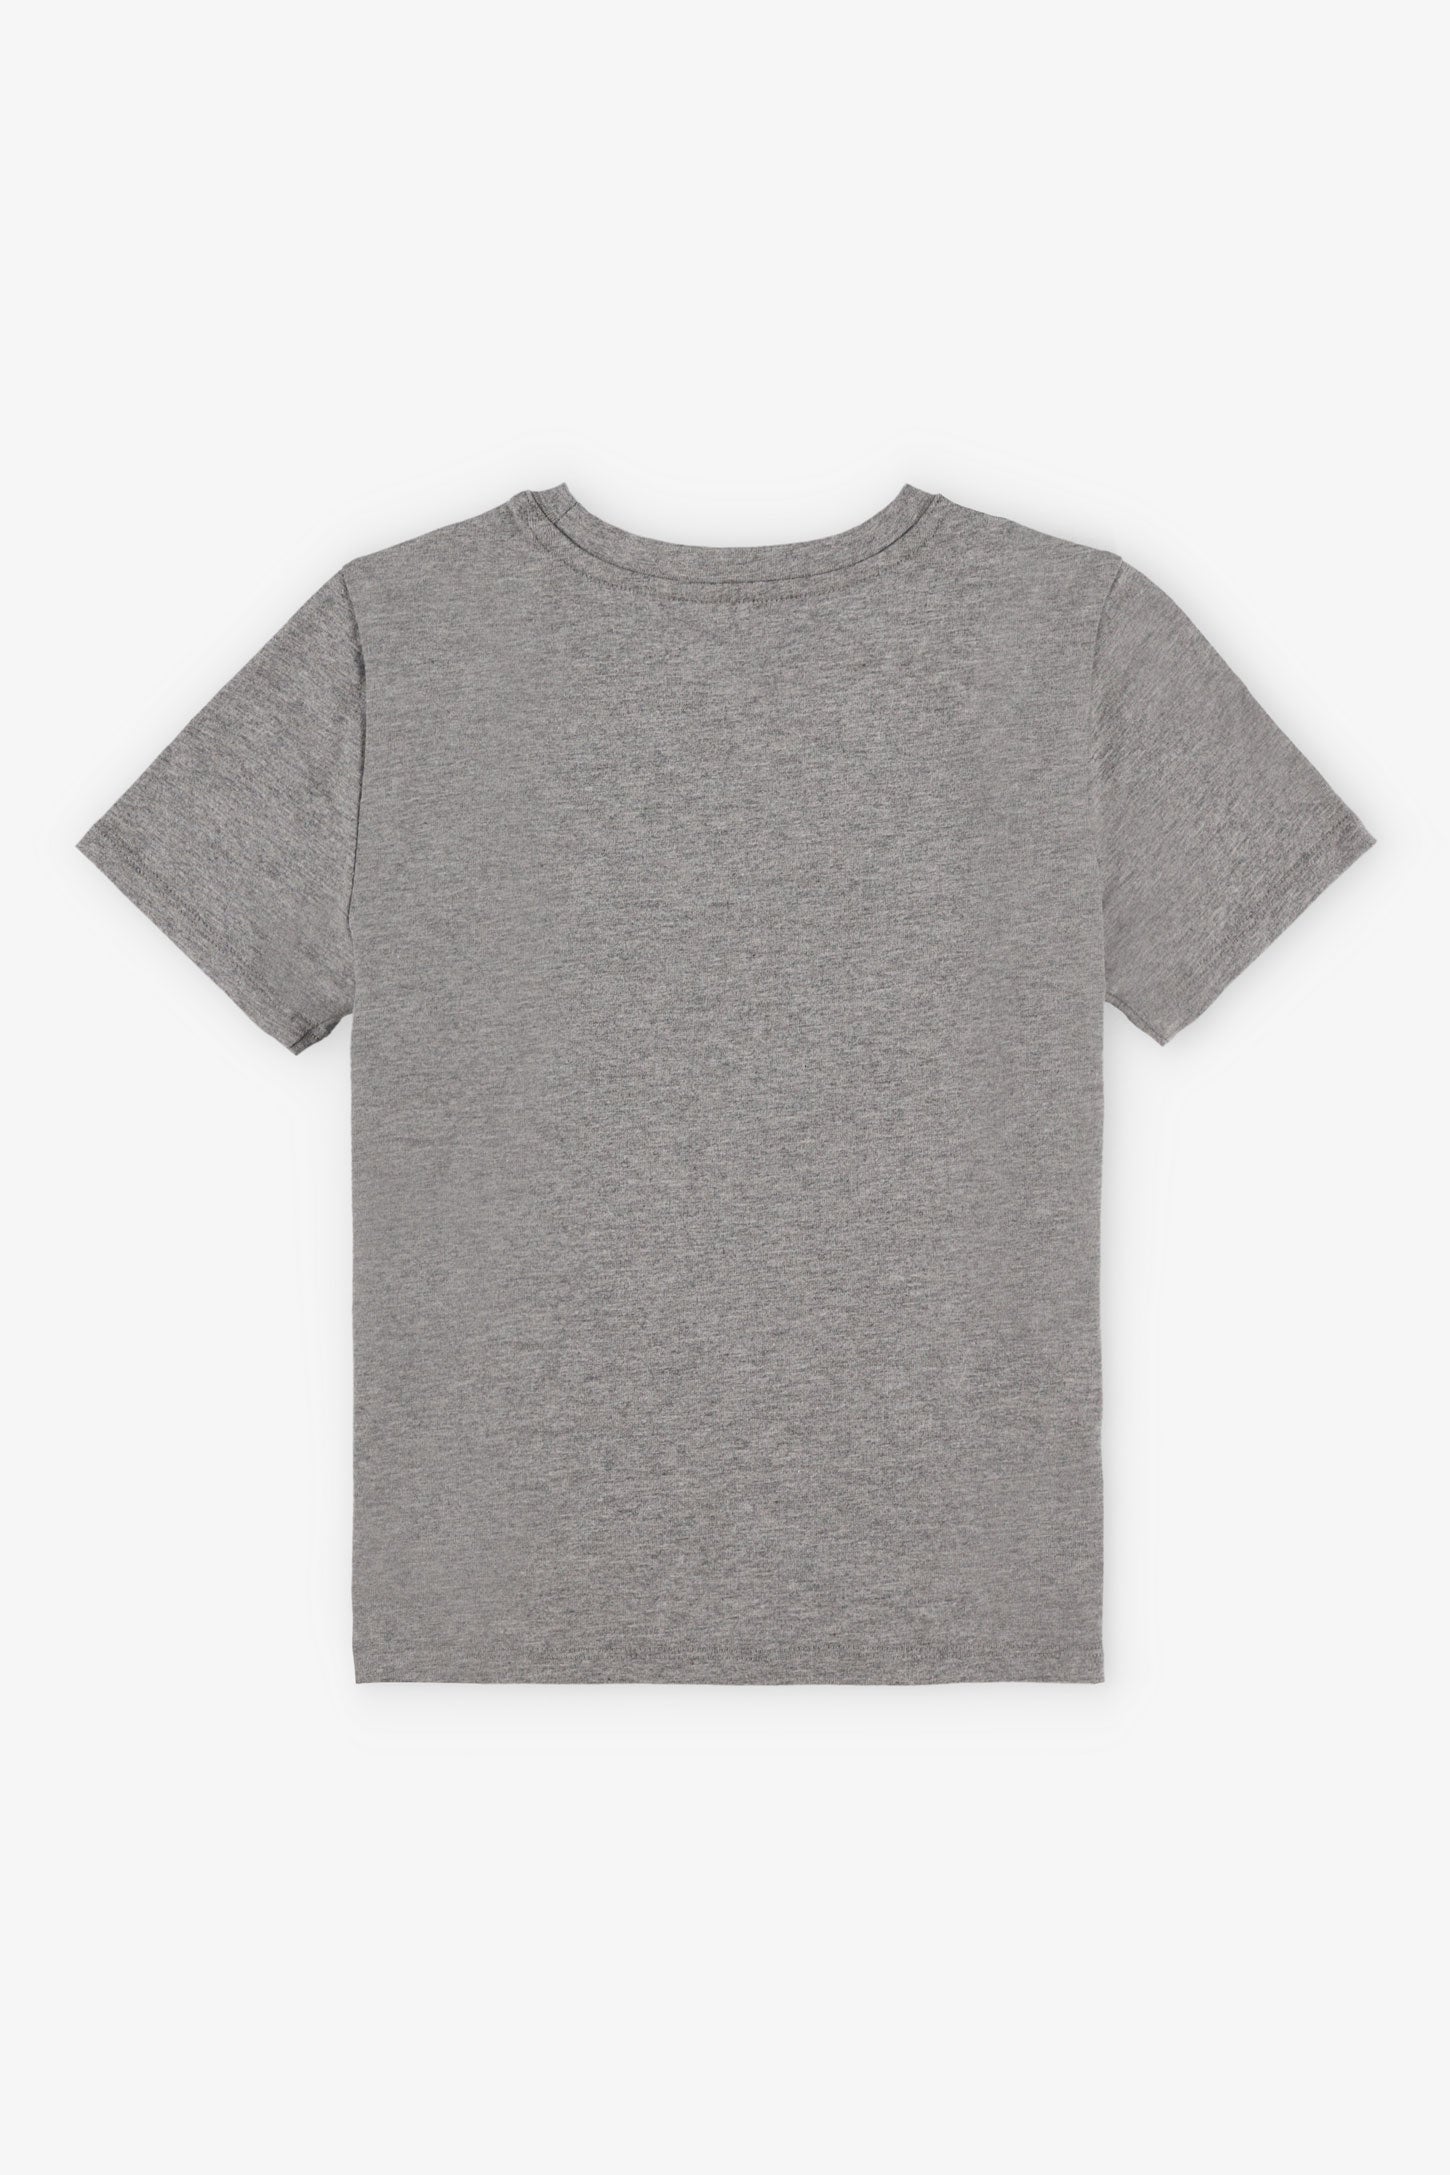 T-shirt col rond à poche, 2/20$ - Enfant garçon && GRIS MIXTE